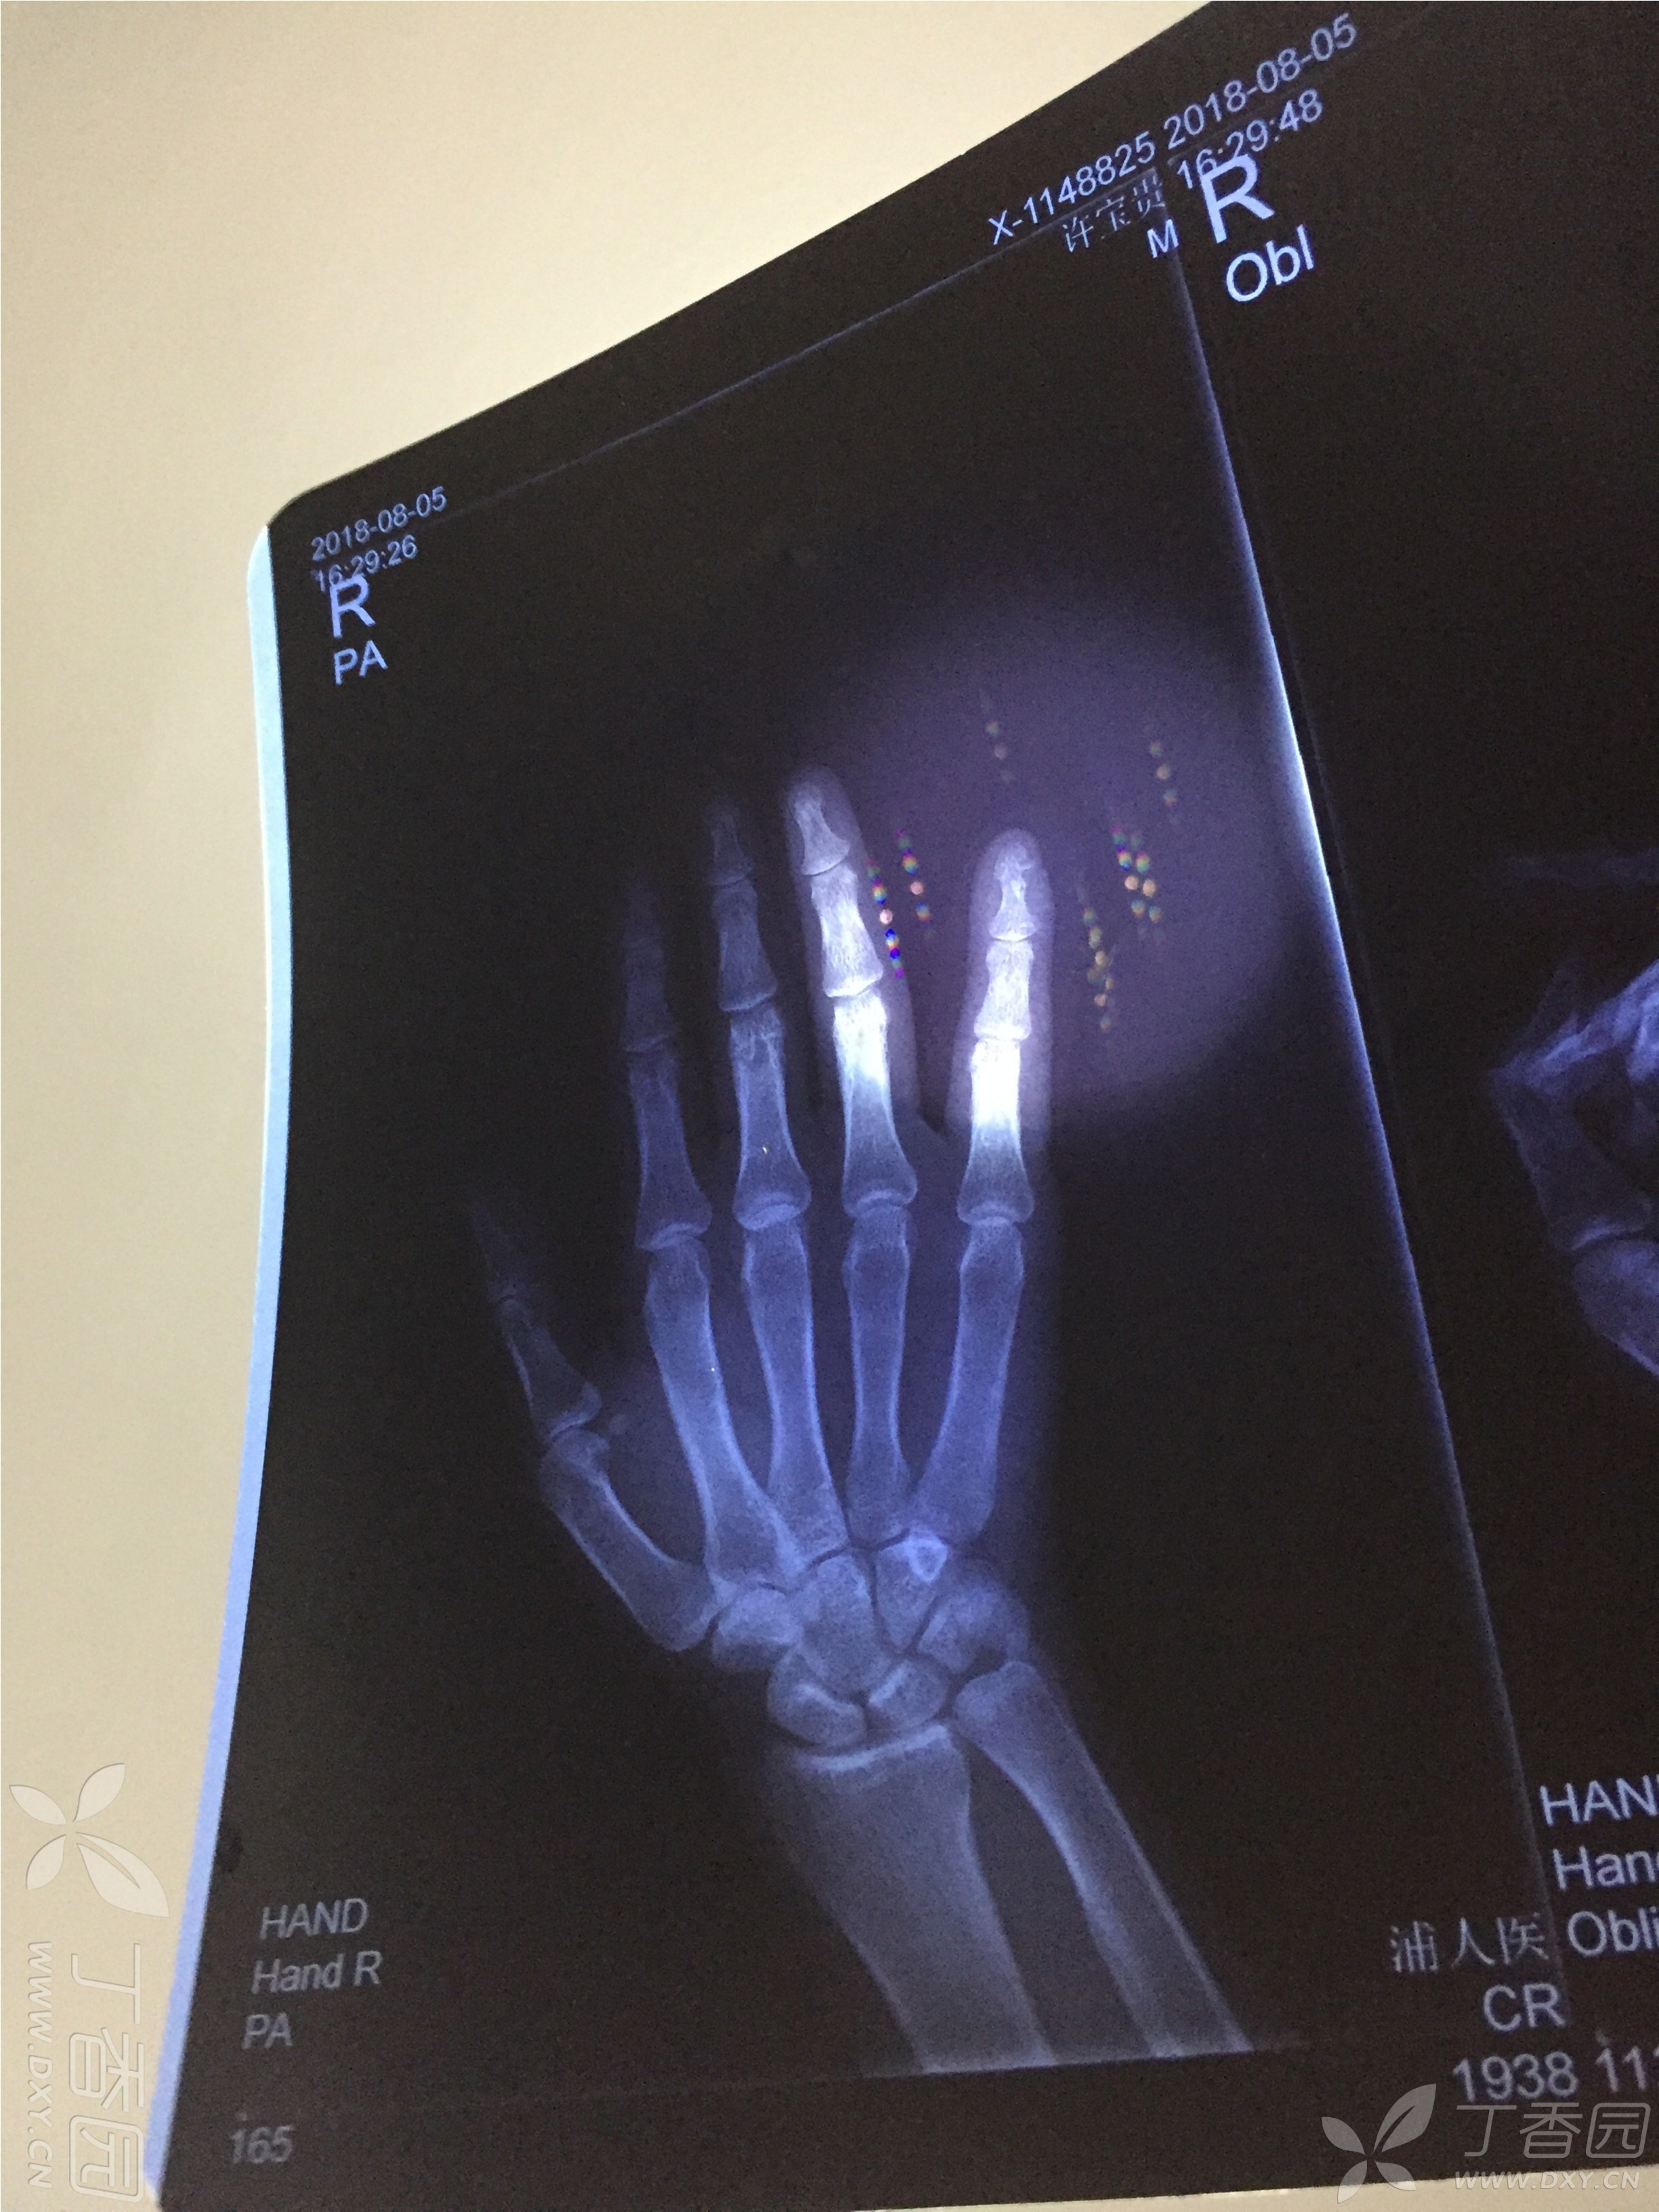 右小指指末关节骨折,请各位医生看看能恢复成原来的样子吗 dxy